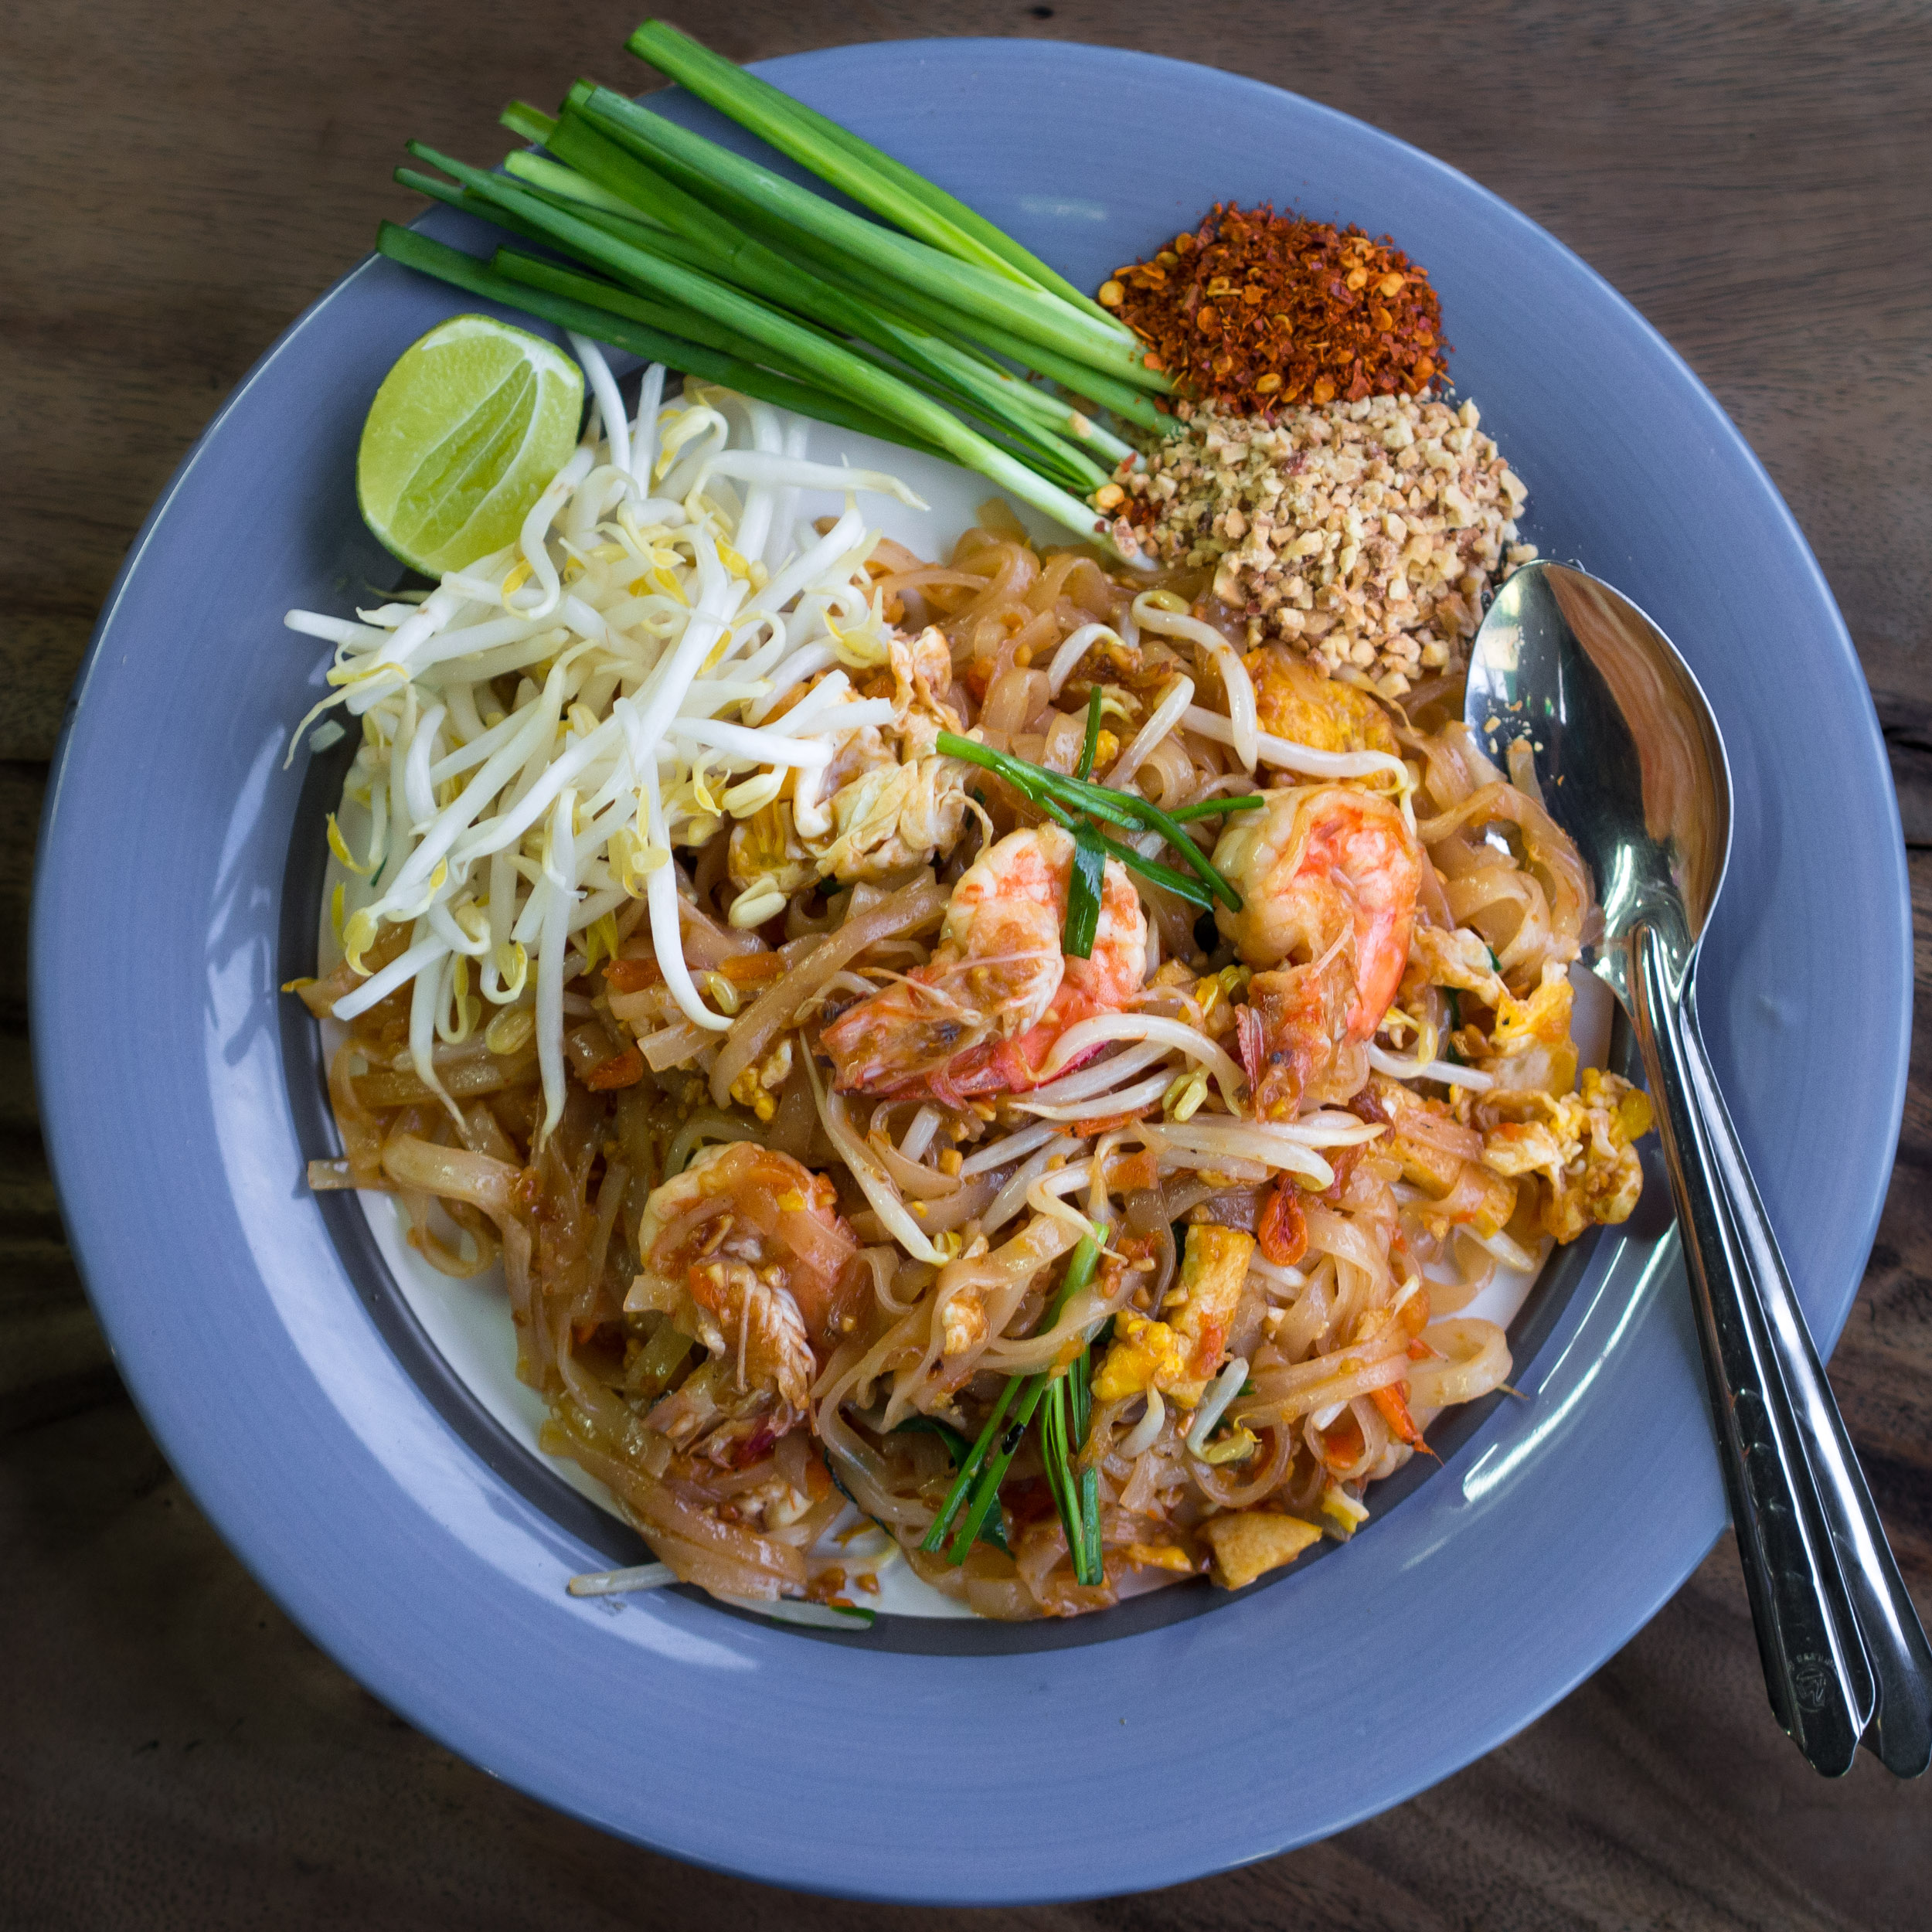 Pad Thái là món ăn đường phố Thái Lan nổi tiếng